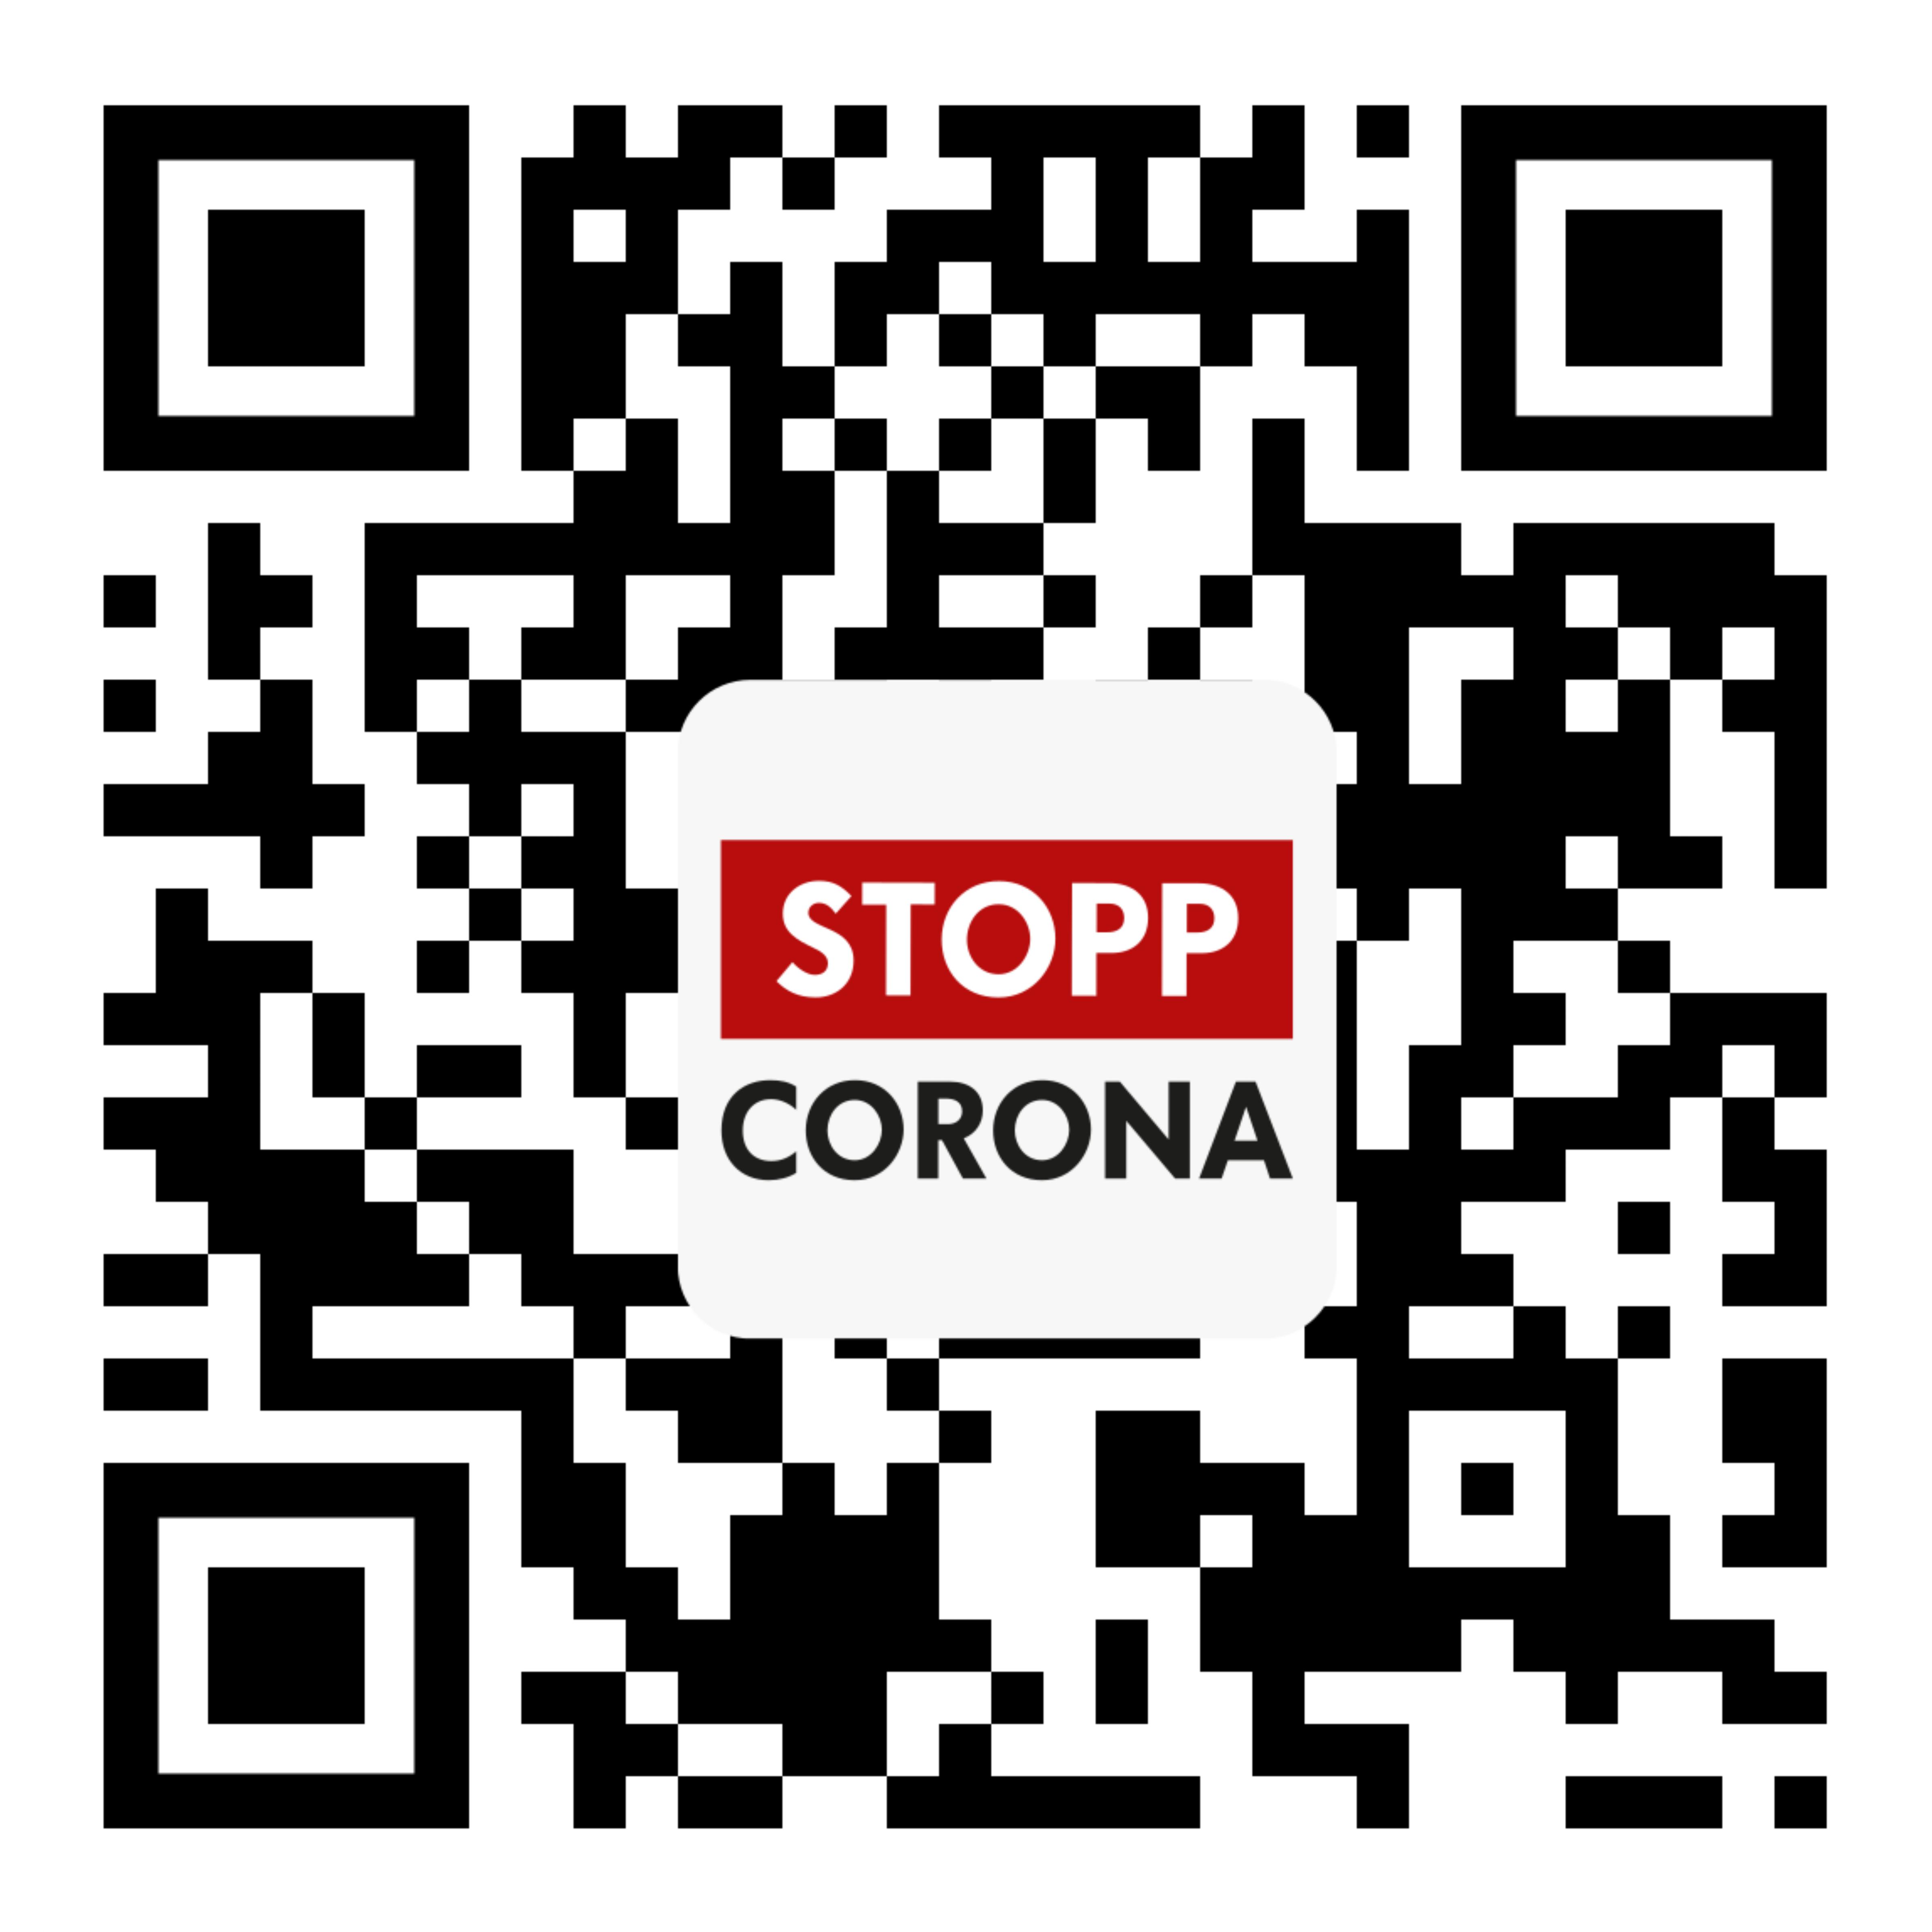 Stopp Corona